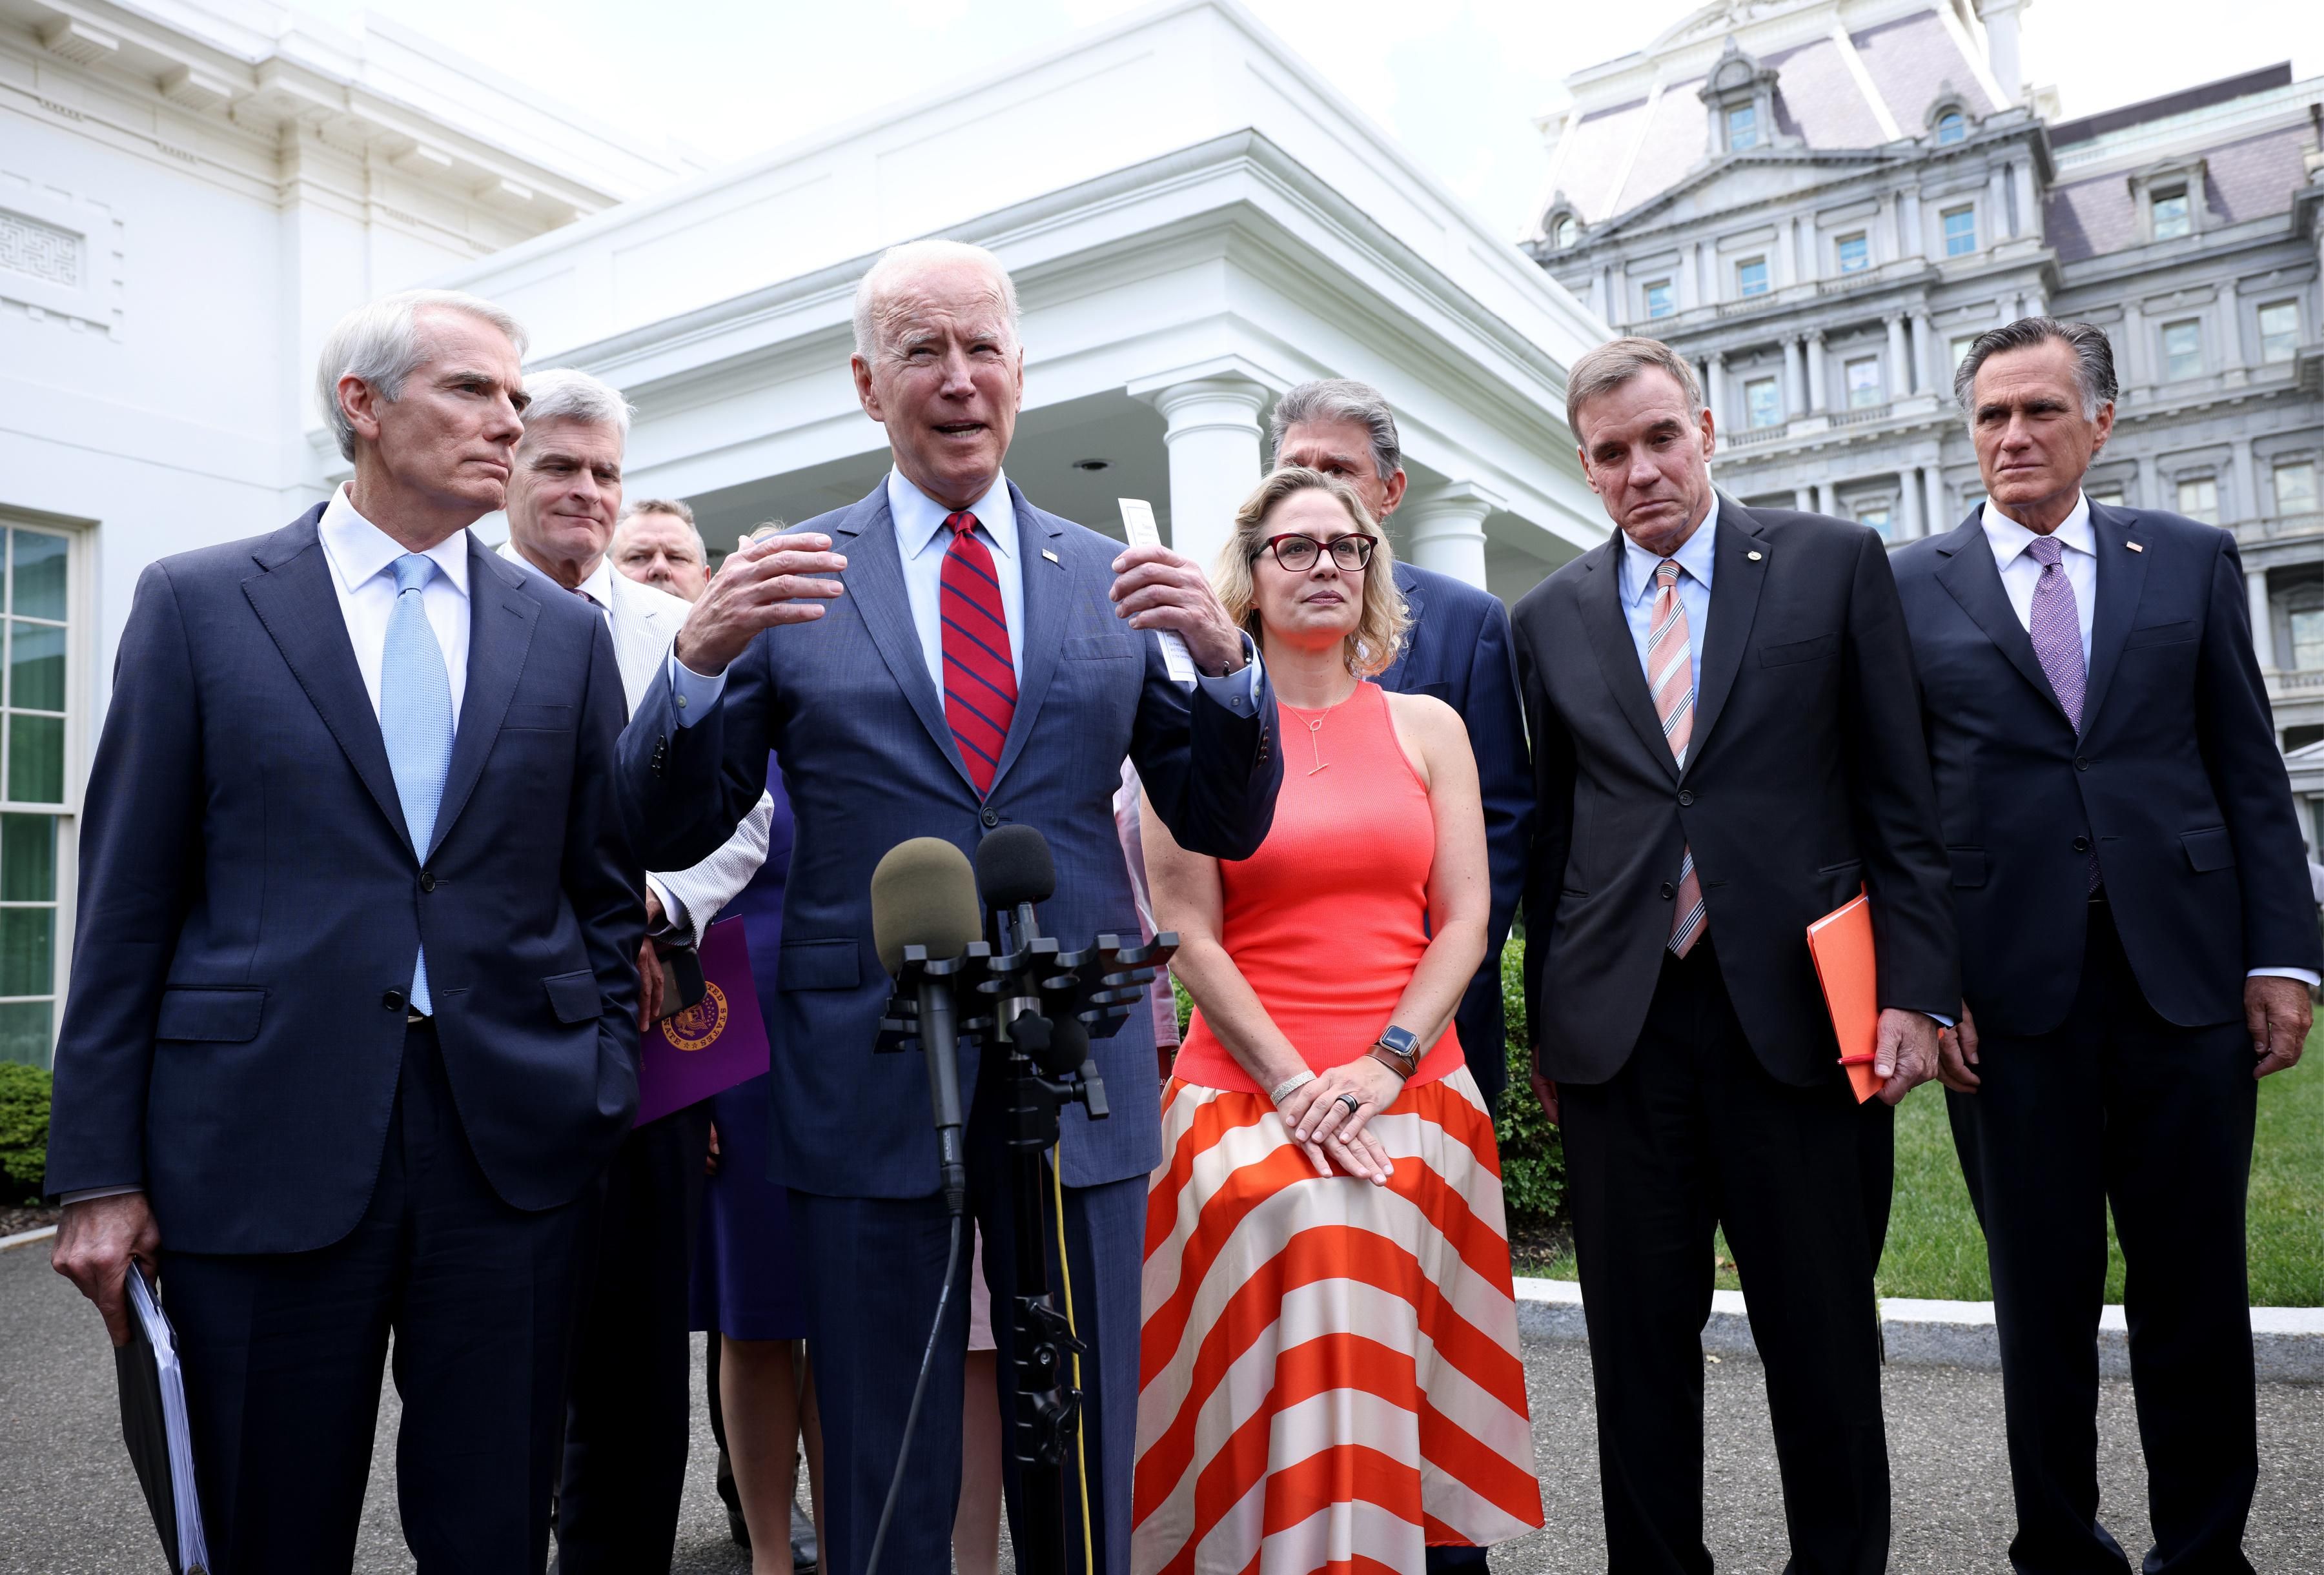 President Joe Biden speaks in front of the White House